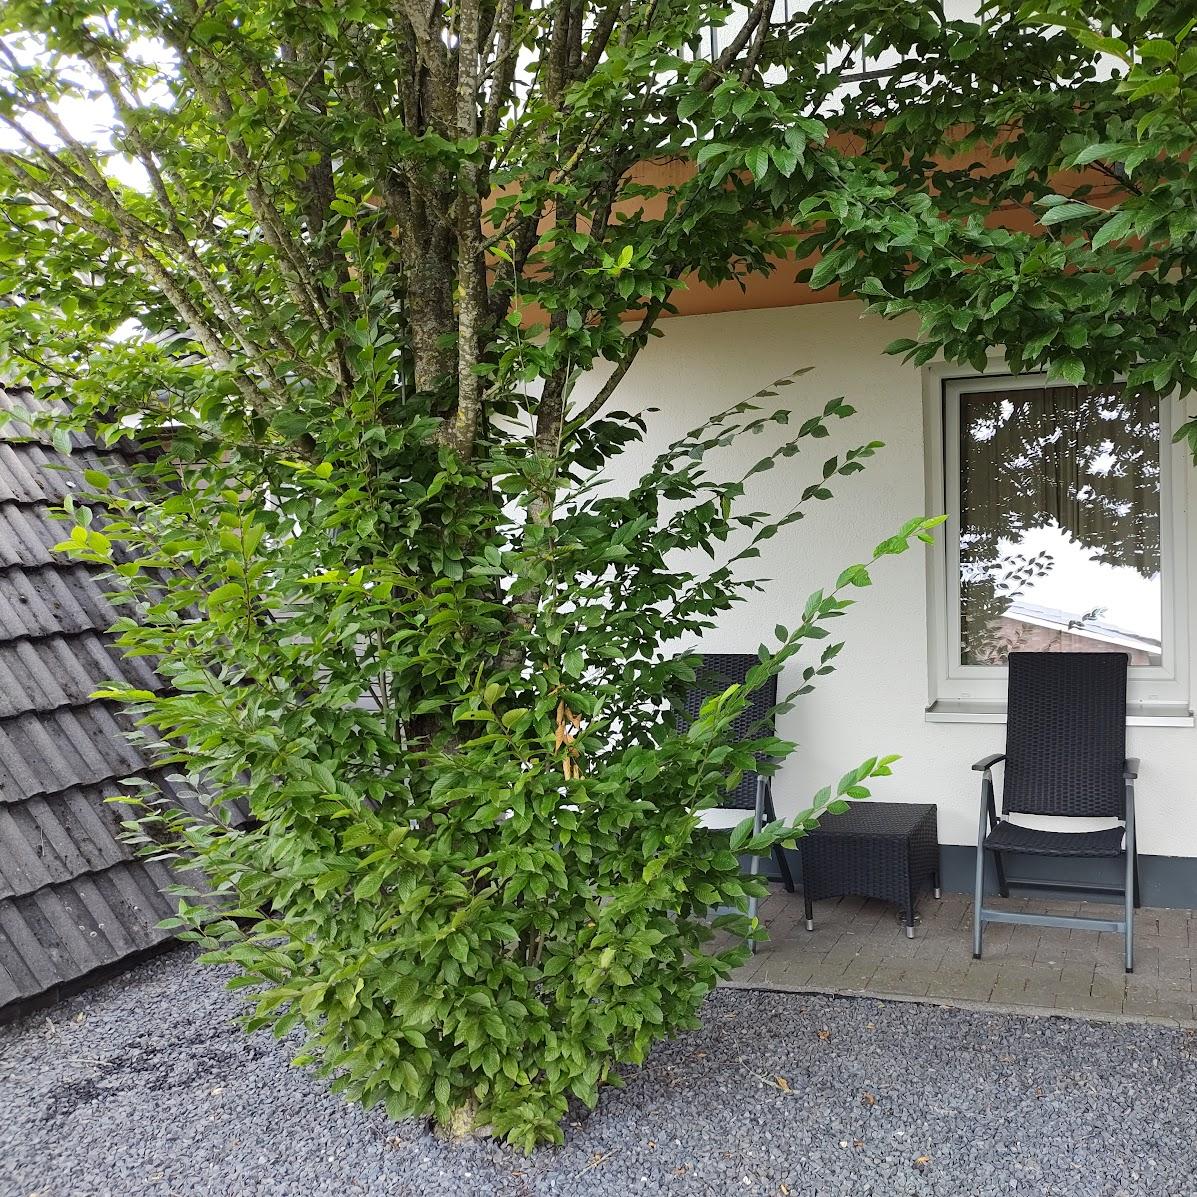 Restaurant "Pur Hotel" in Emlichheim